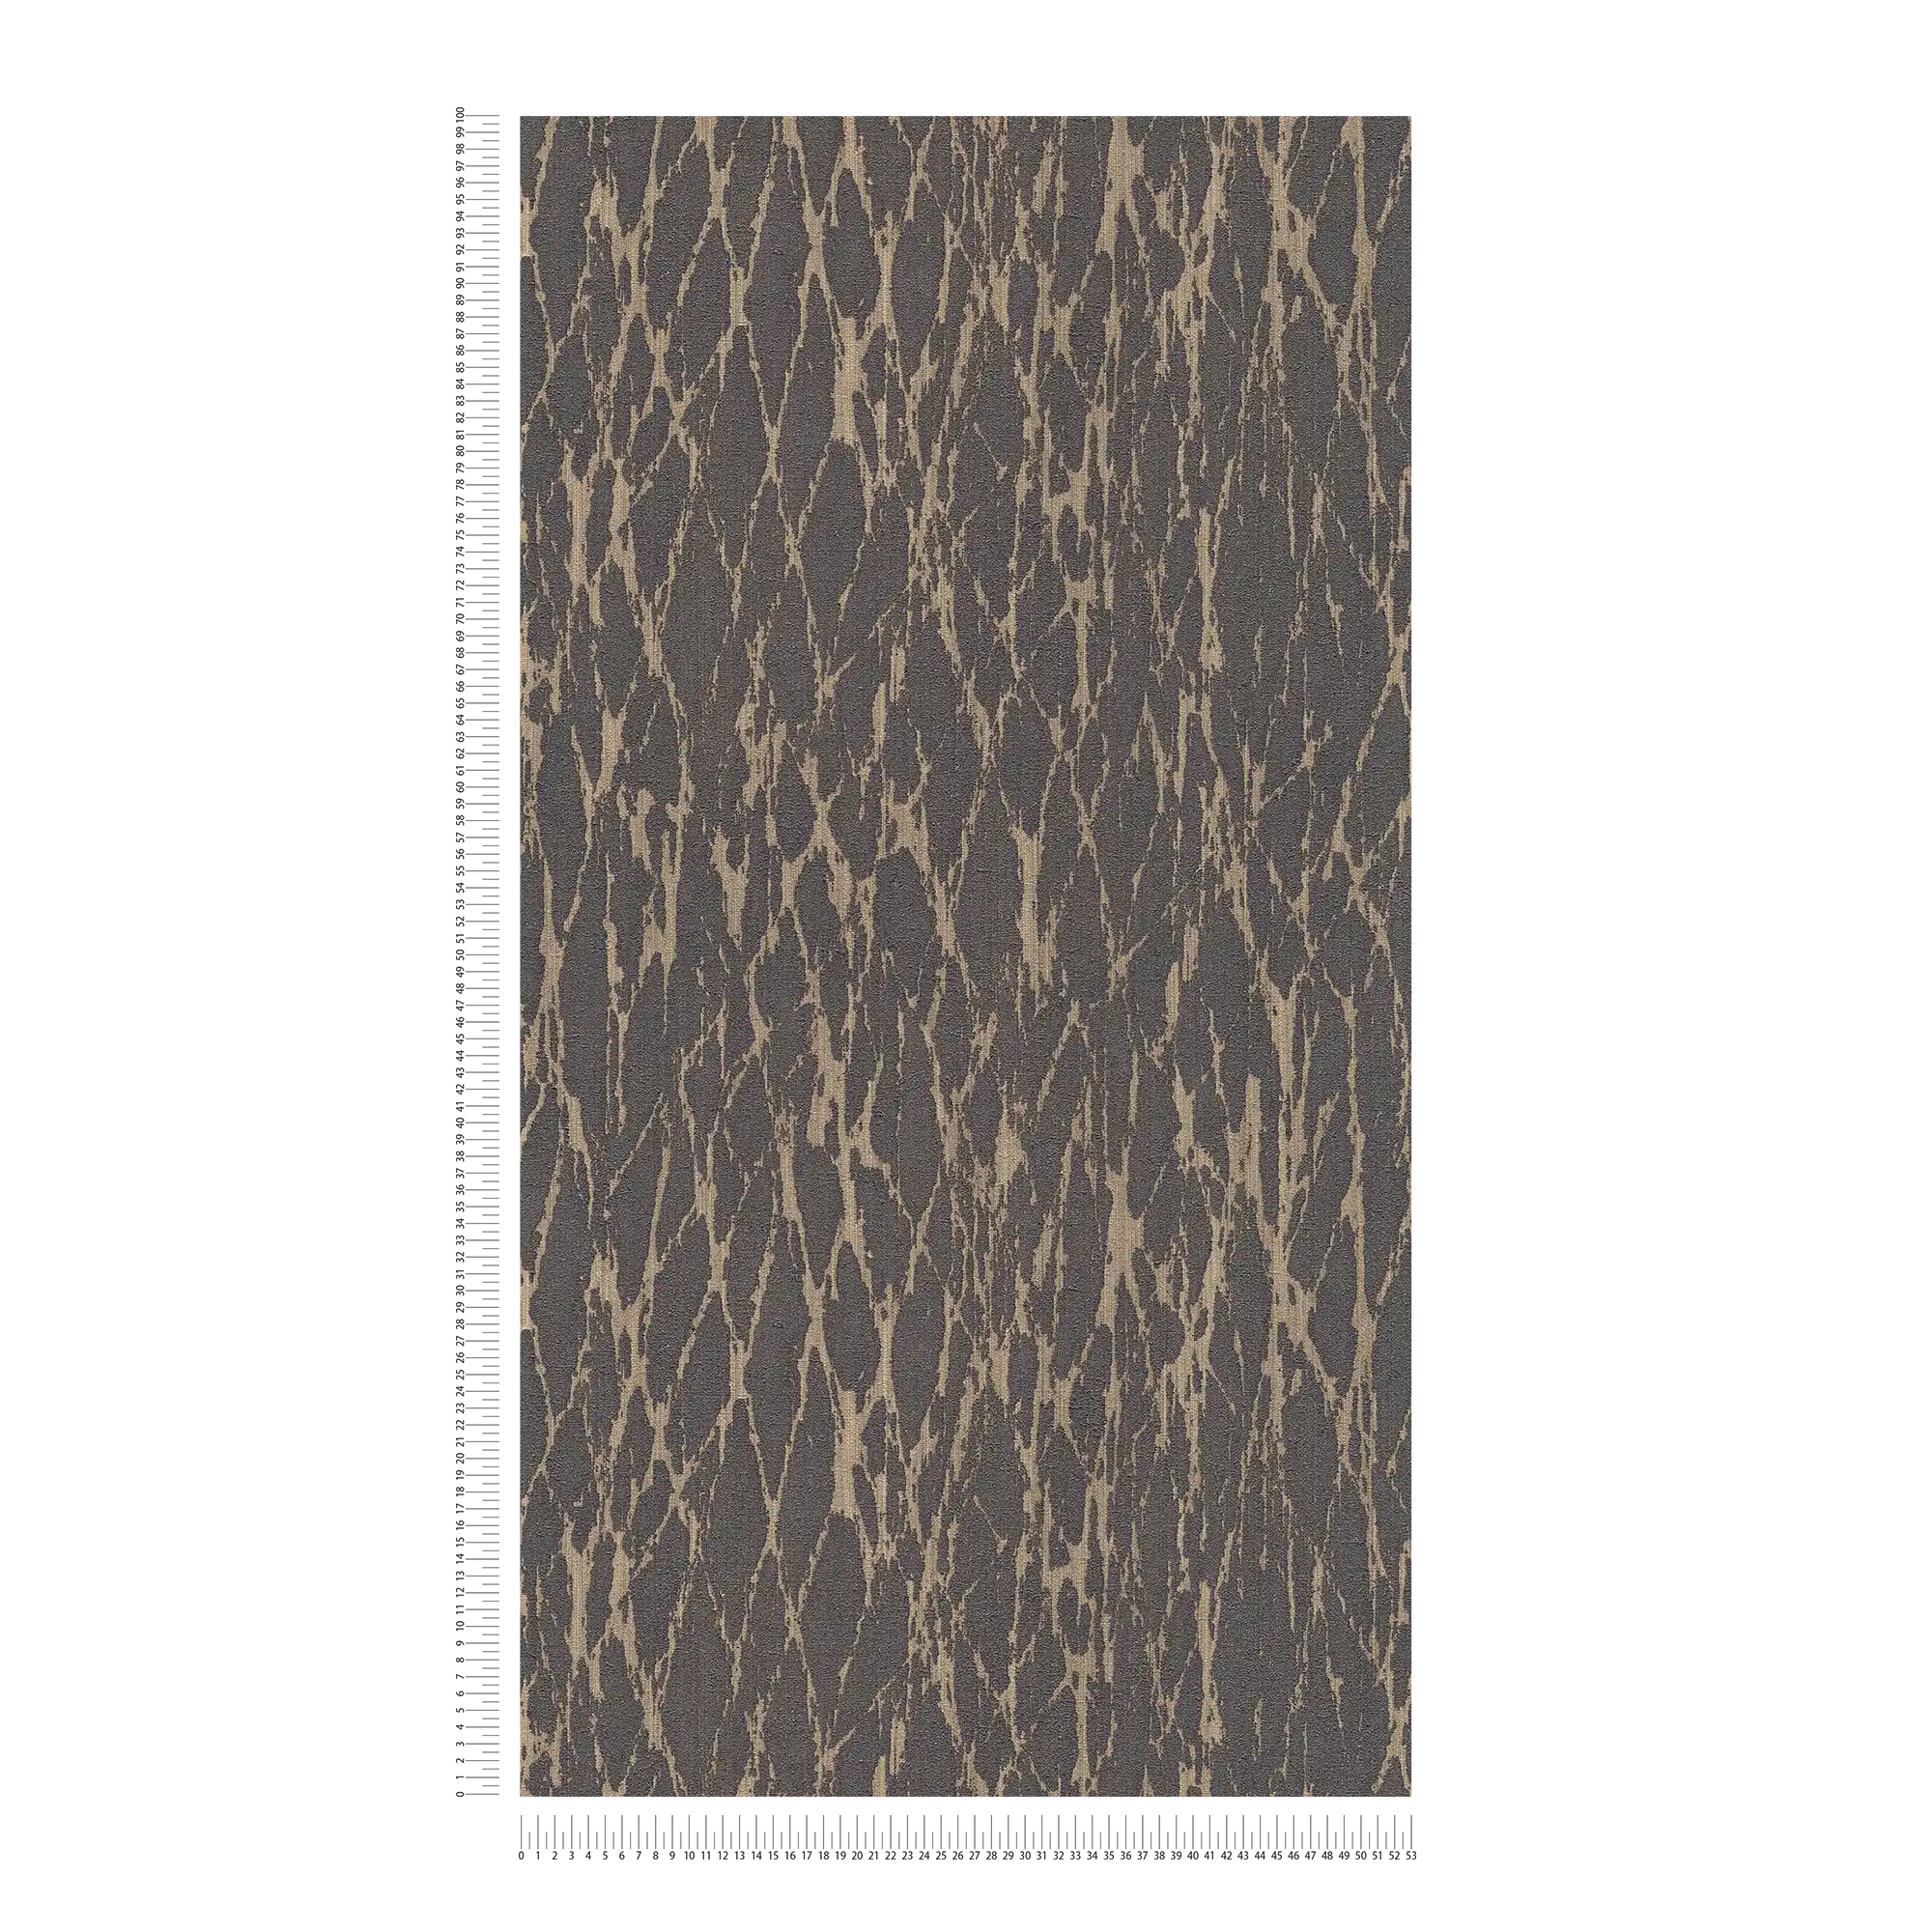             papier peint en papier intissé avec motif de lignes ondulées - noir, marron, beige
        